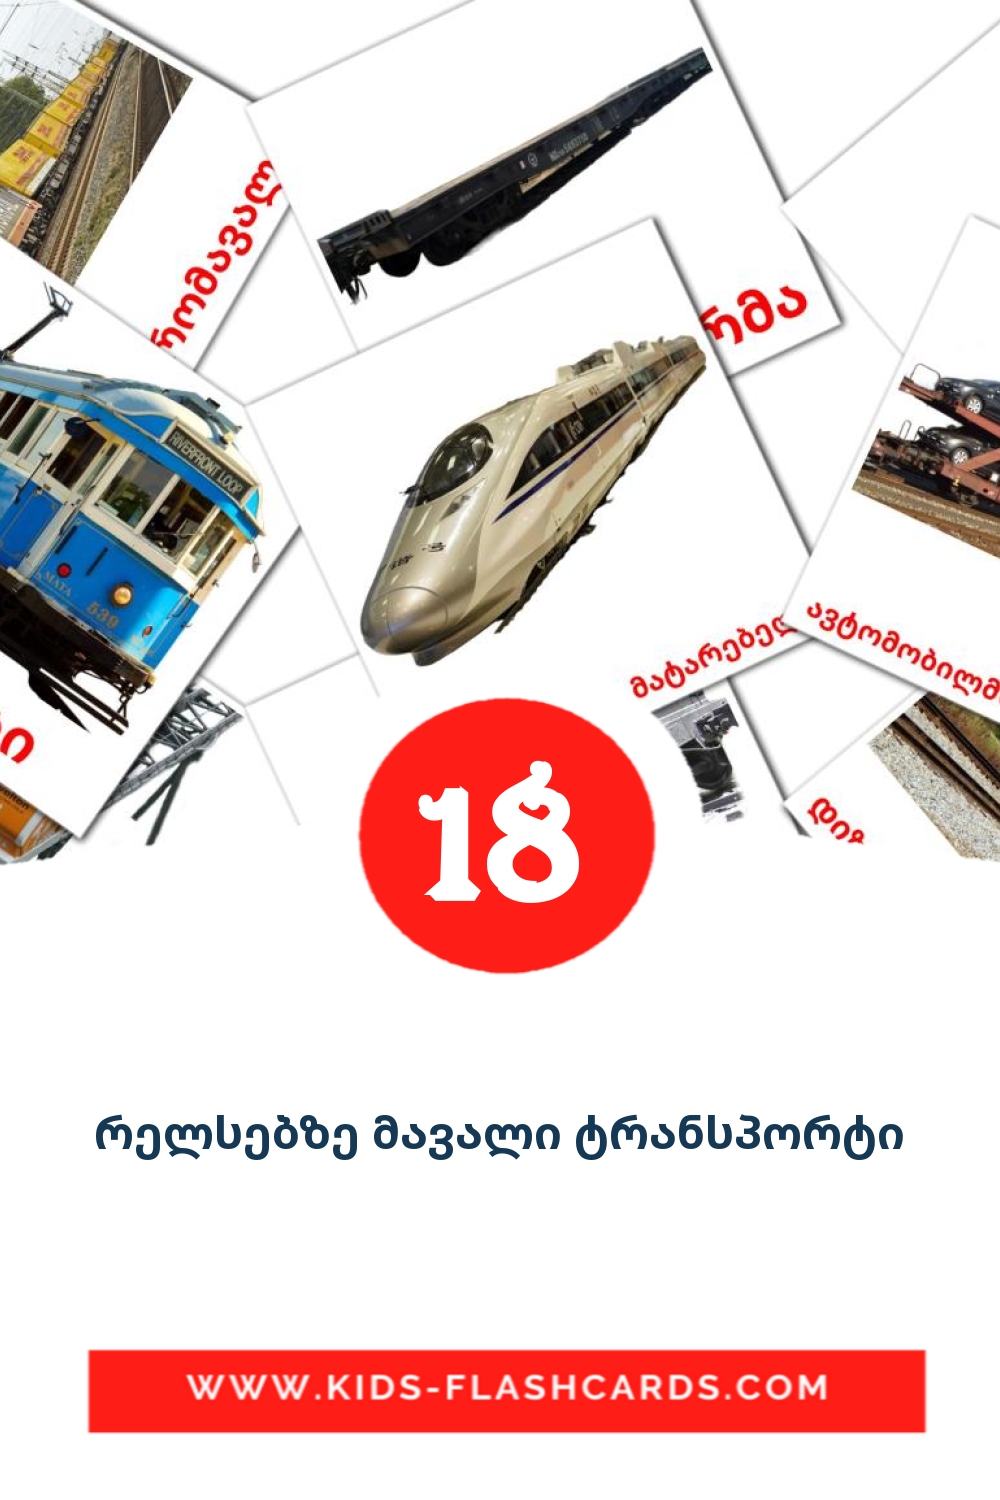 18 cartes illustrées de რელსებზე მავალი ტრანსპორტი pour la maternelle en géorgien